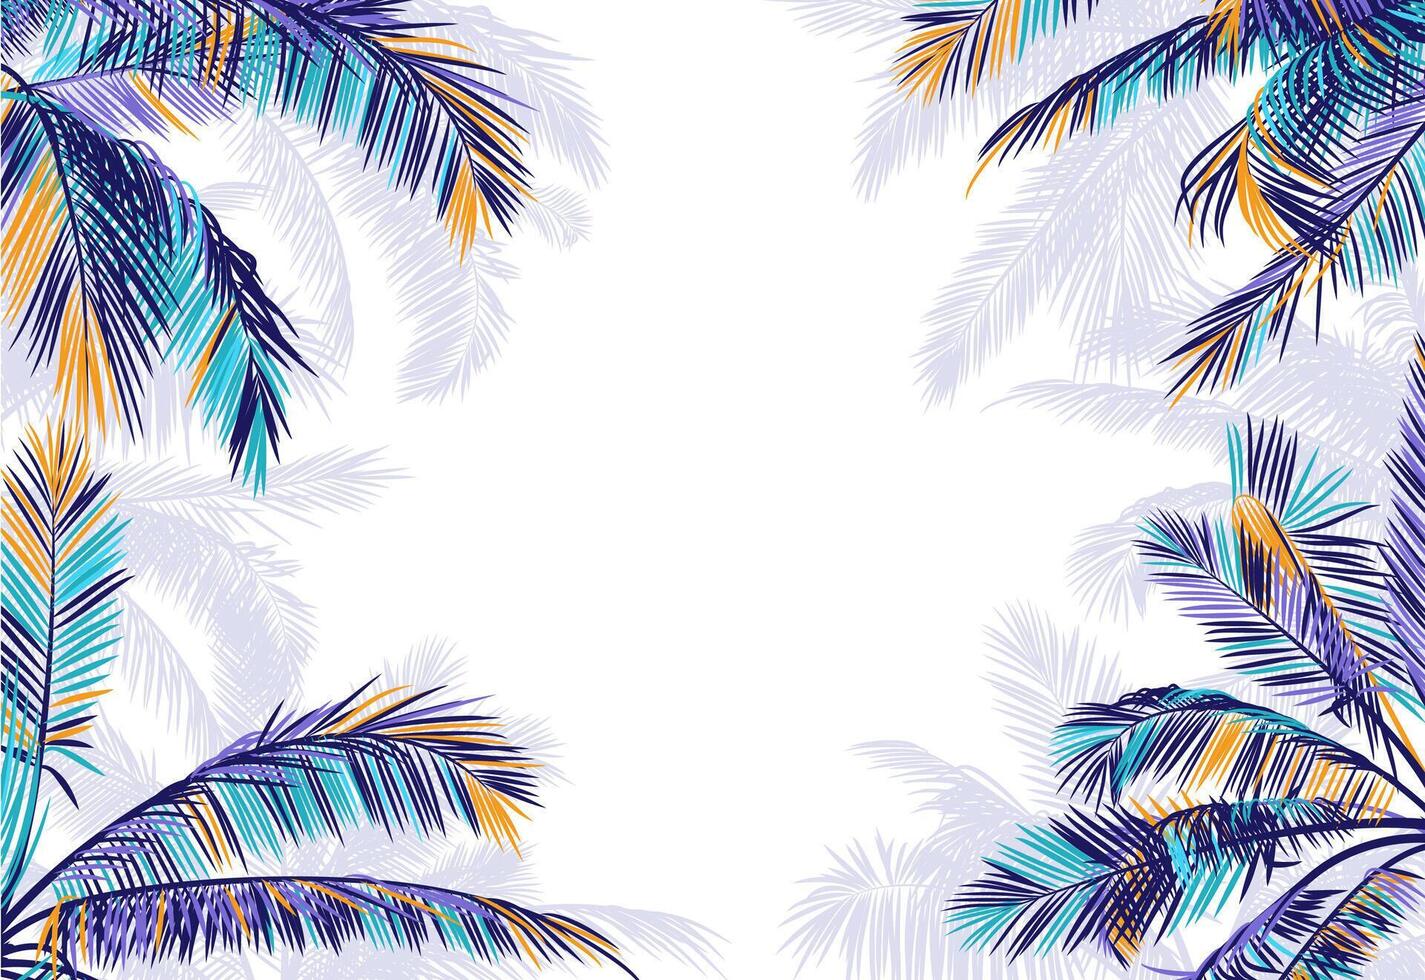 vektor ram med realistiska palmblad. färgglad siluett med kopia utrymme på en vit bakgrund. tropisk illustration för banderoll, affisch, broschyr, tapeter. botanisk bakgrund med palmträd